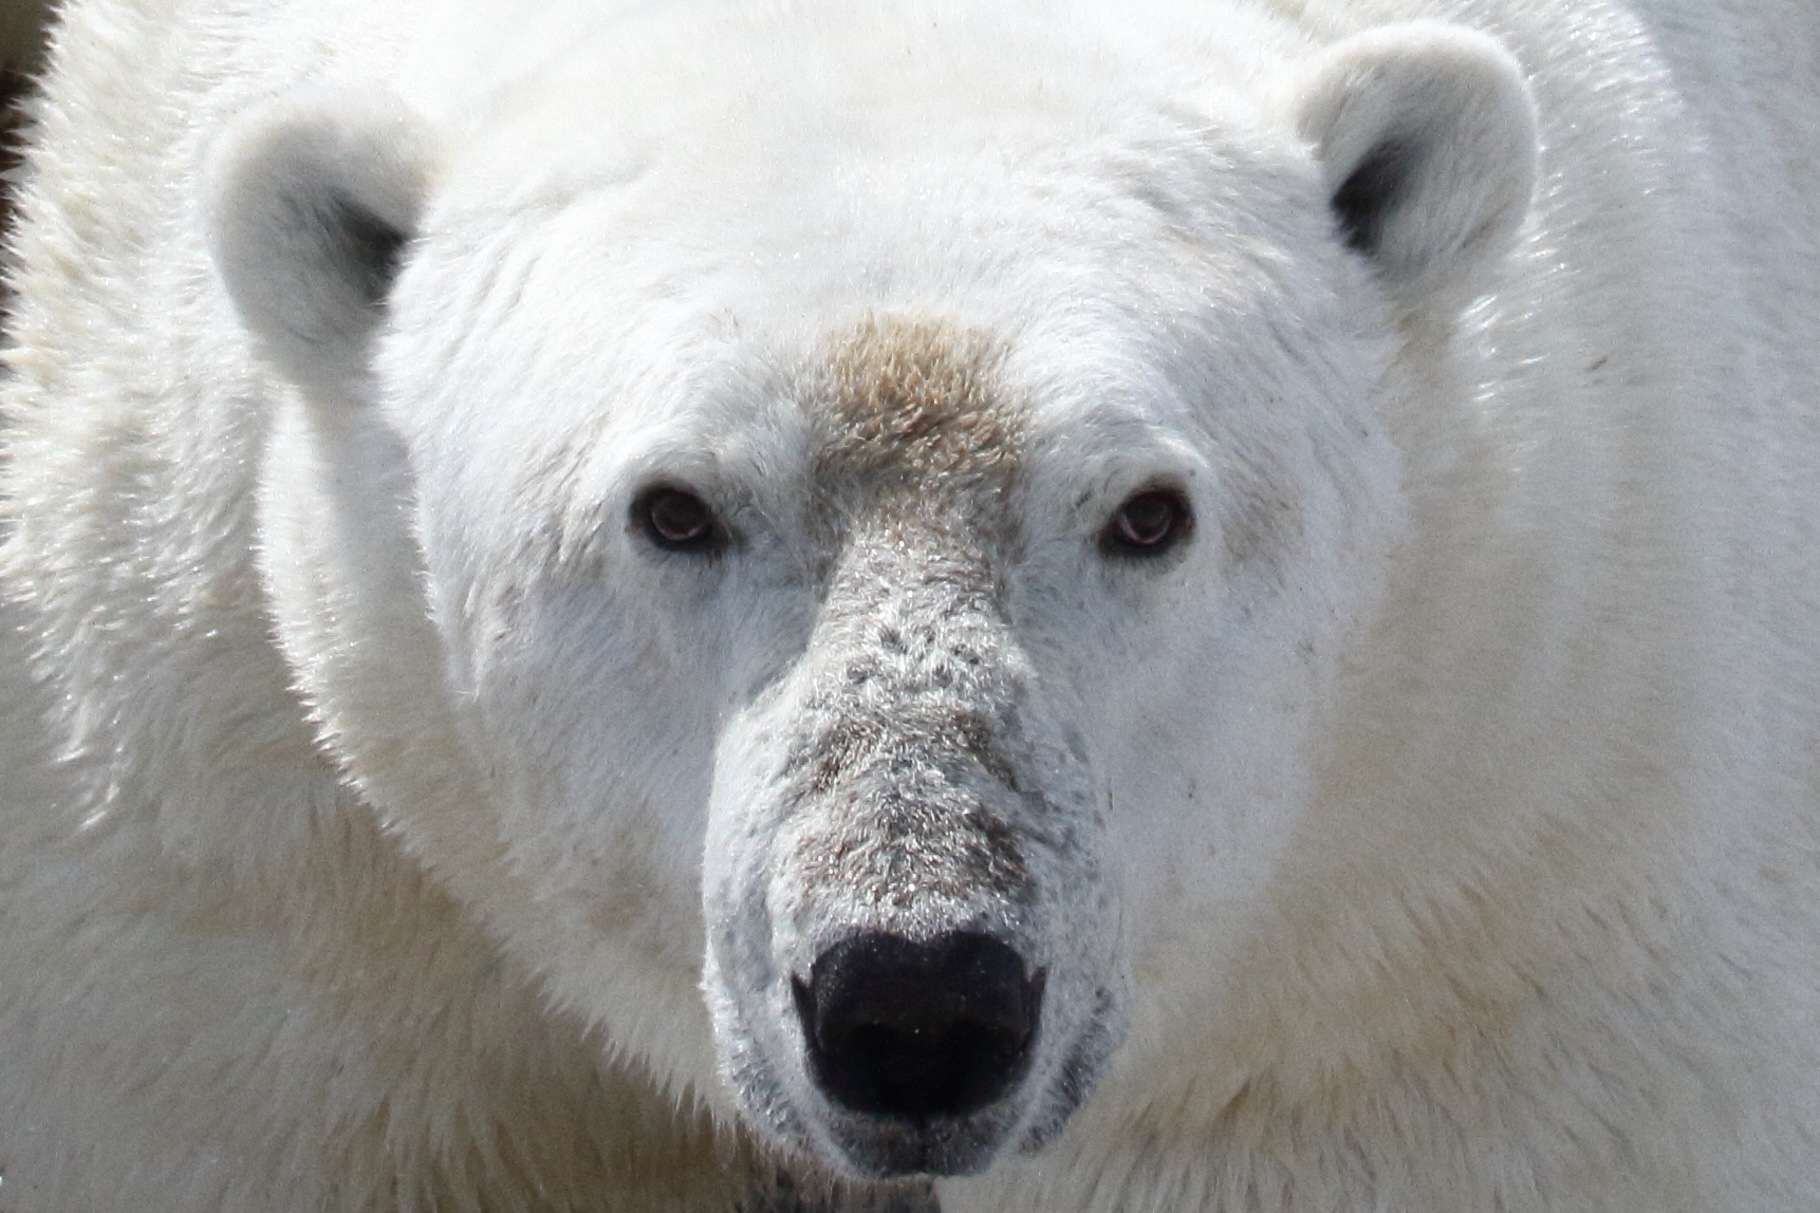 Les ours polaires sont condamnés à mourrir de faim !